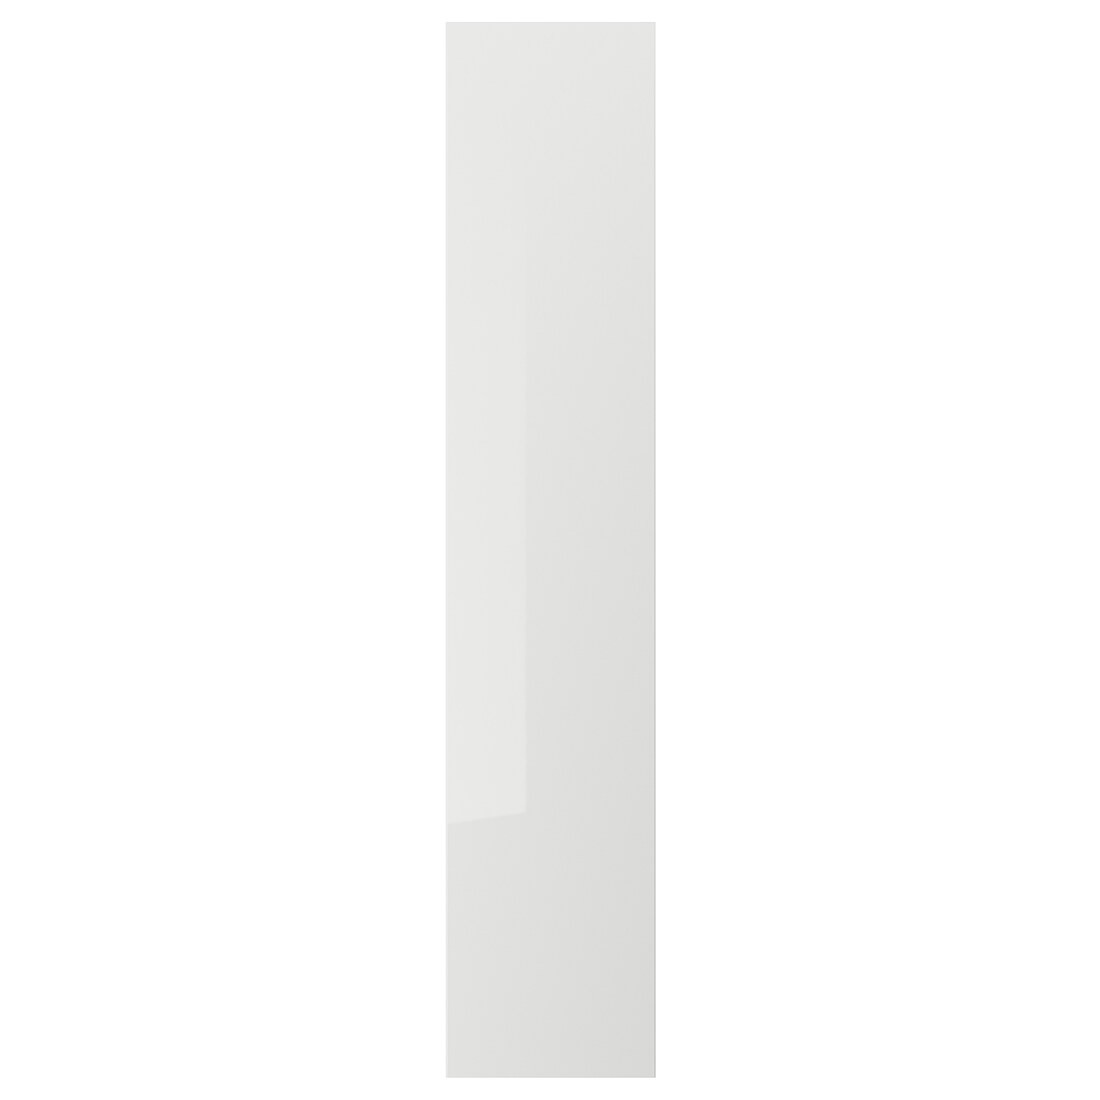 RINGHULT РІНГХУЛЬТ Двері, глянцевий світло-сірий, 40x200 см